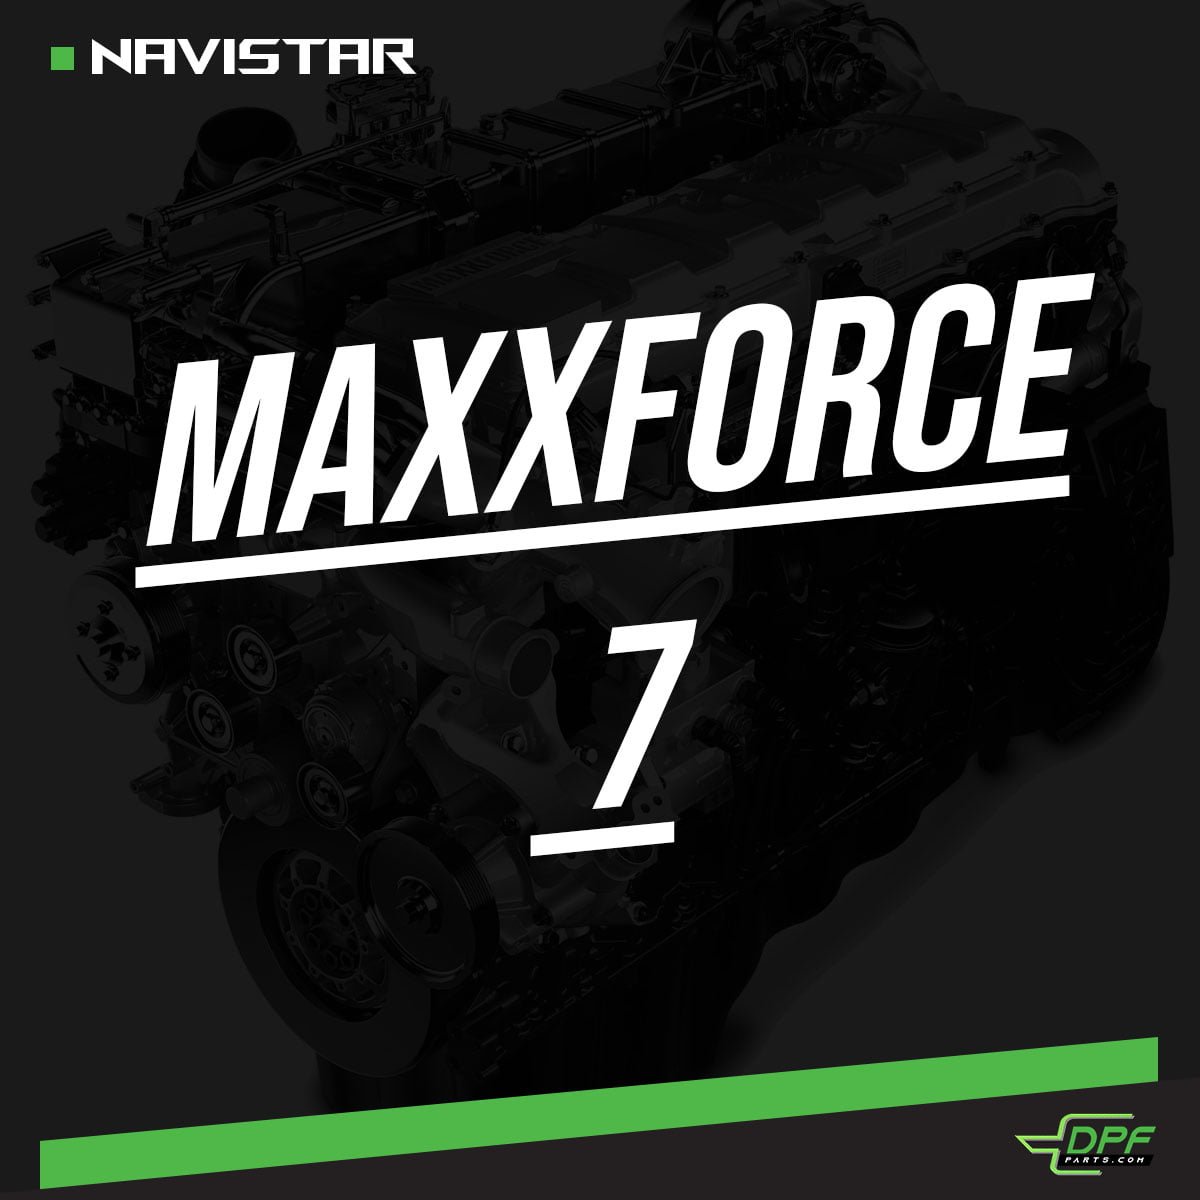 Maxxforce 7